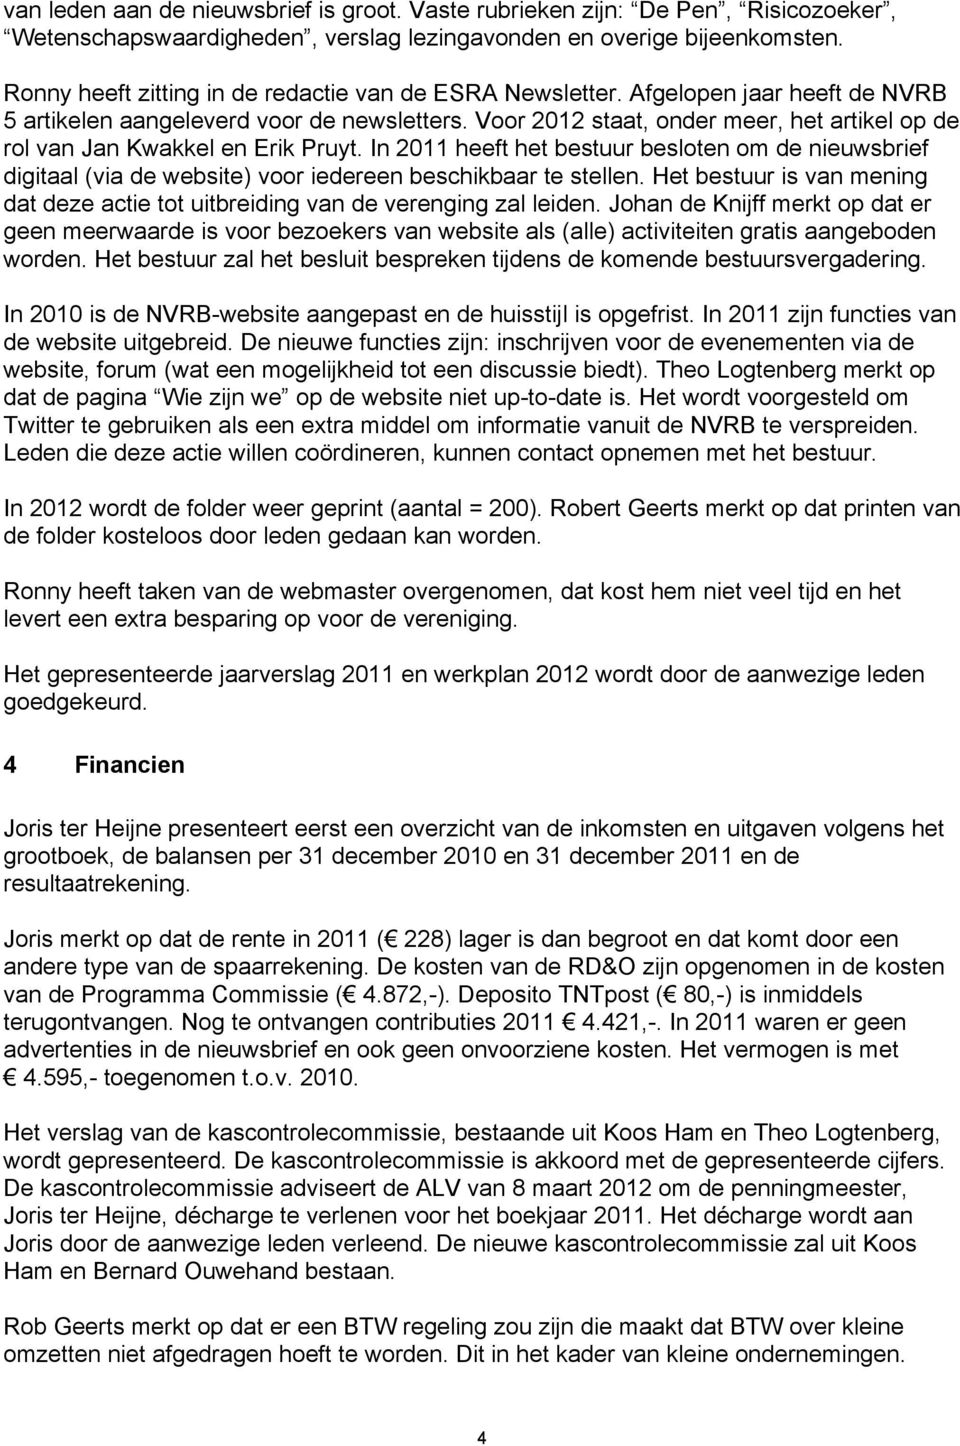 Voor 2012 staat, onder meer, het artikel op de rol van Jan Kwakkel en Erik Pruyt. In 2011 heeft het bestuur besloten om de nieuwsbrief digitaal (via de website) voor iedereen beschikbaar te stellen.